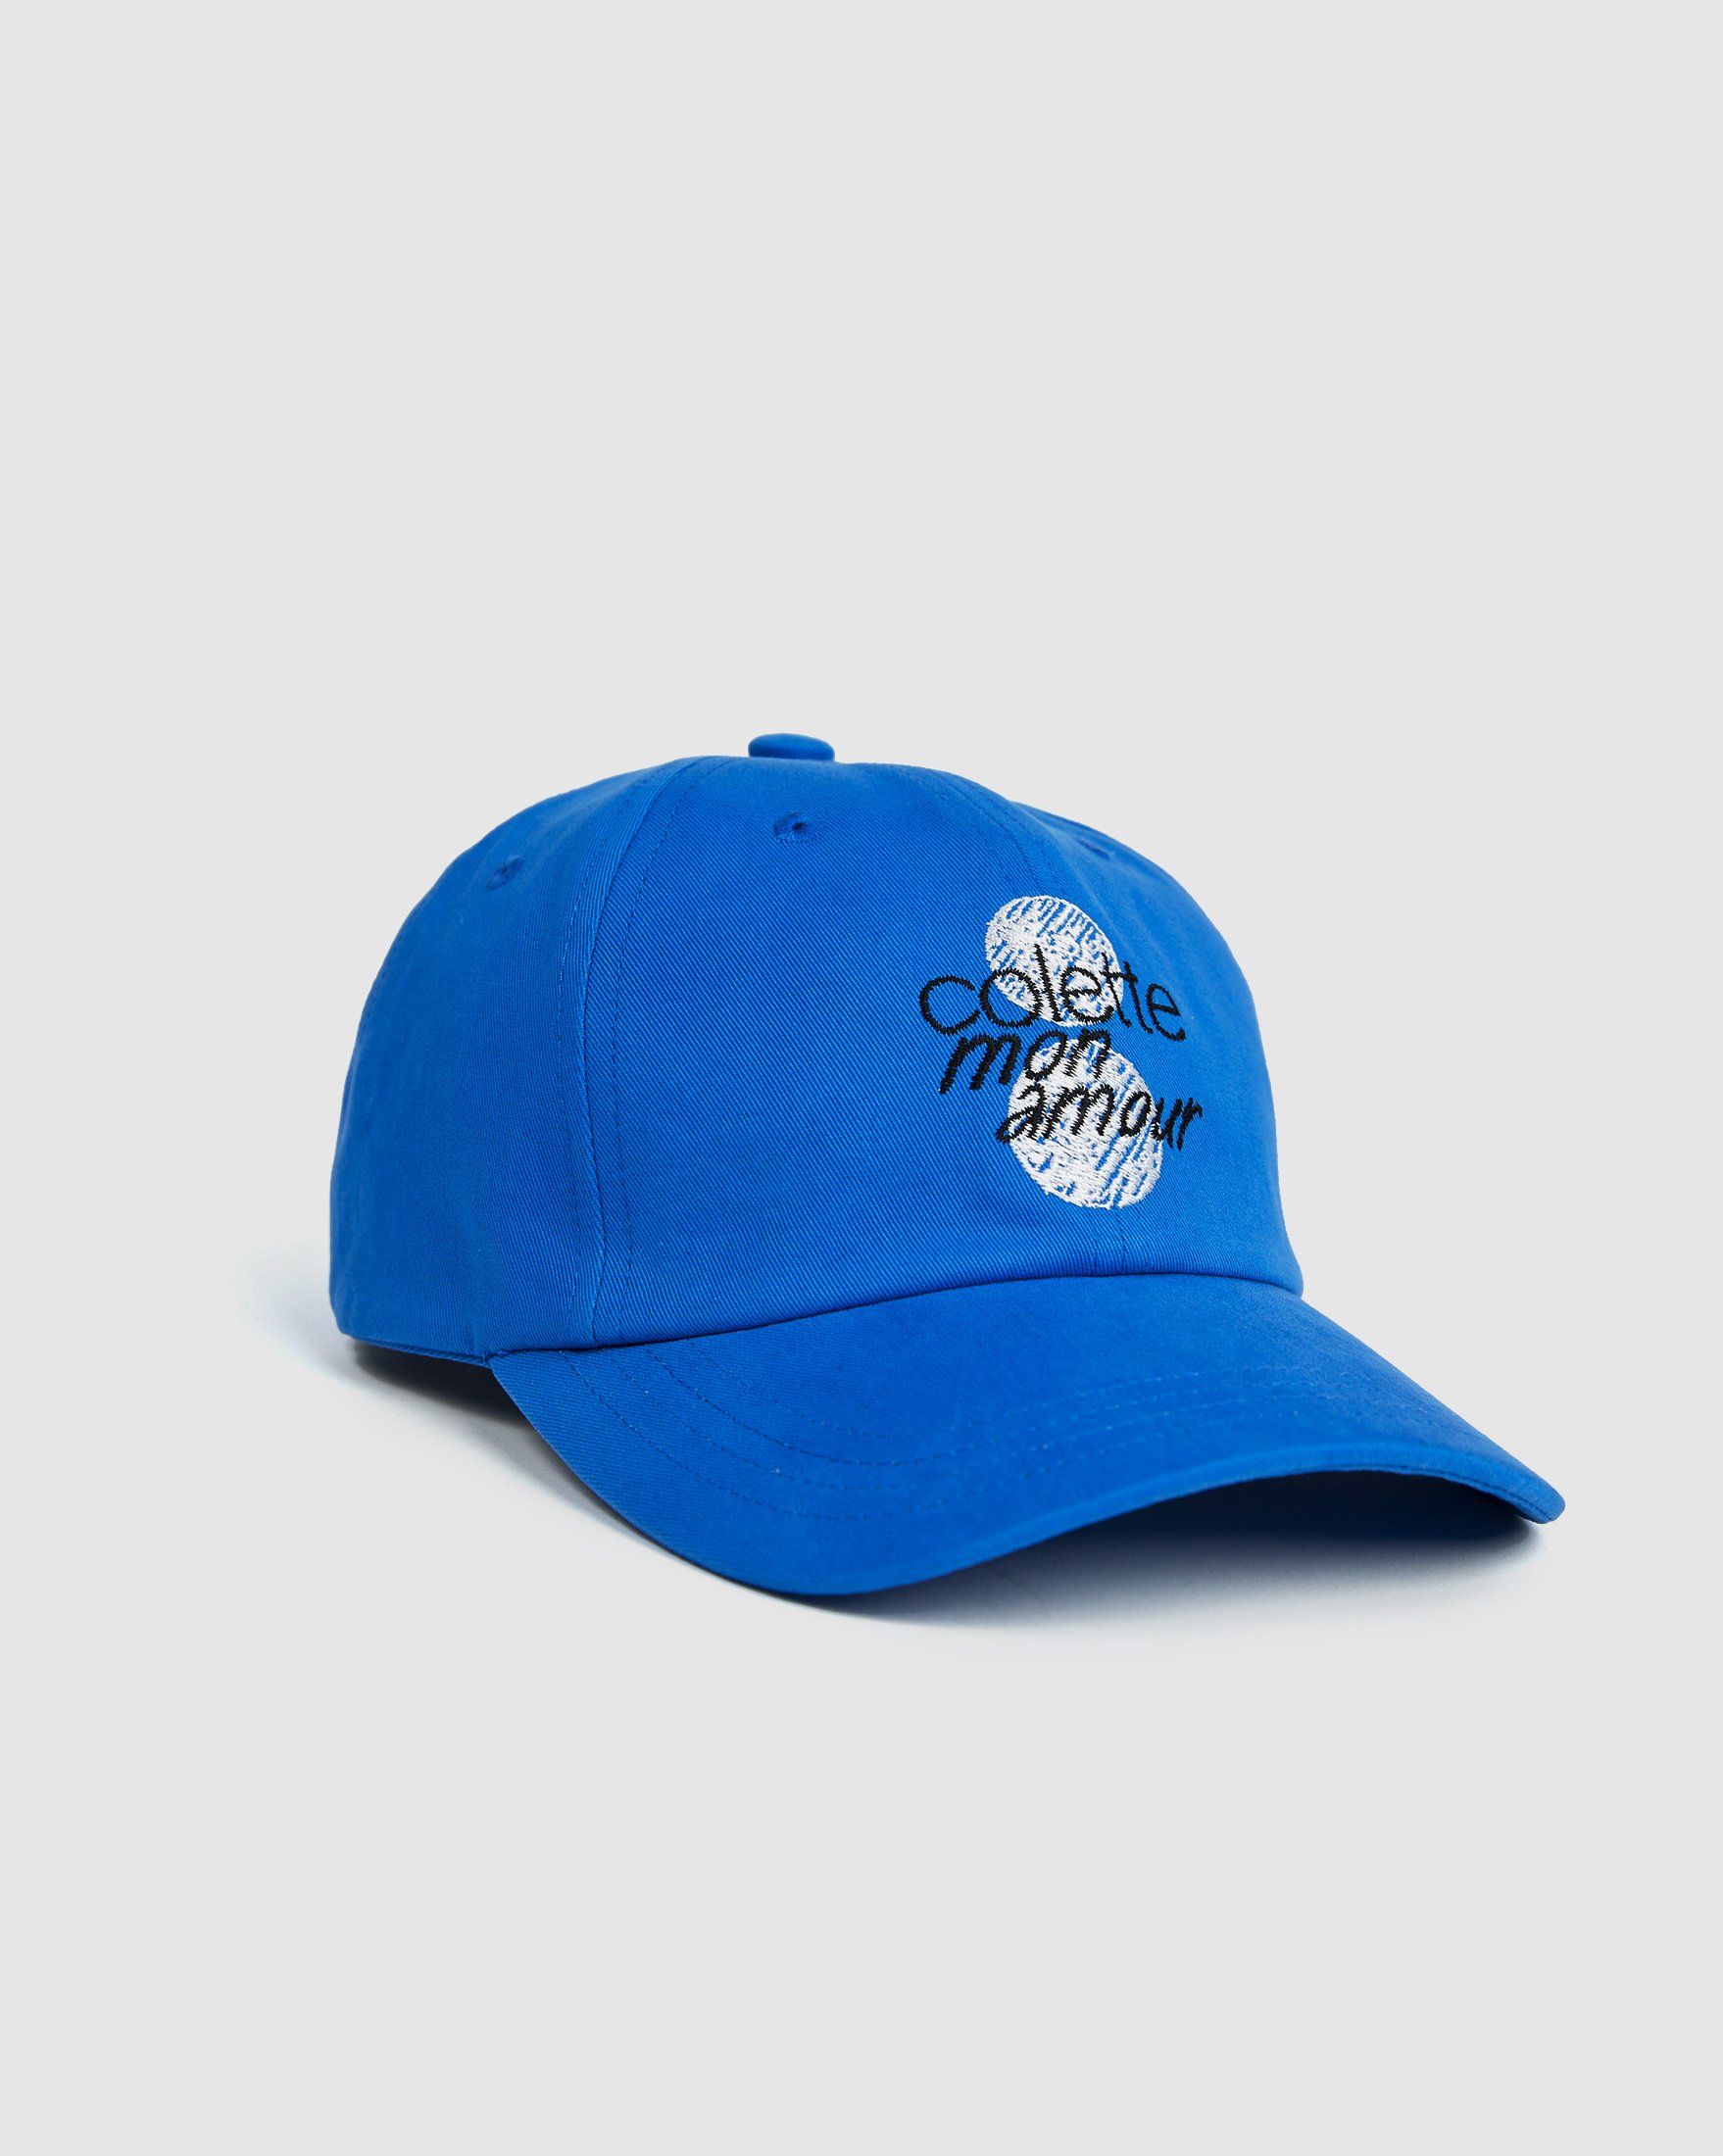 Colette Mon Amour - Dots Baseball Cap Blue - Caps - Blue - Image 1